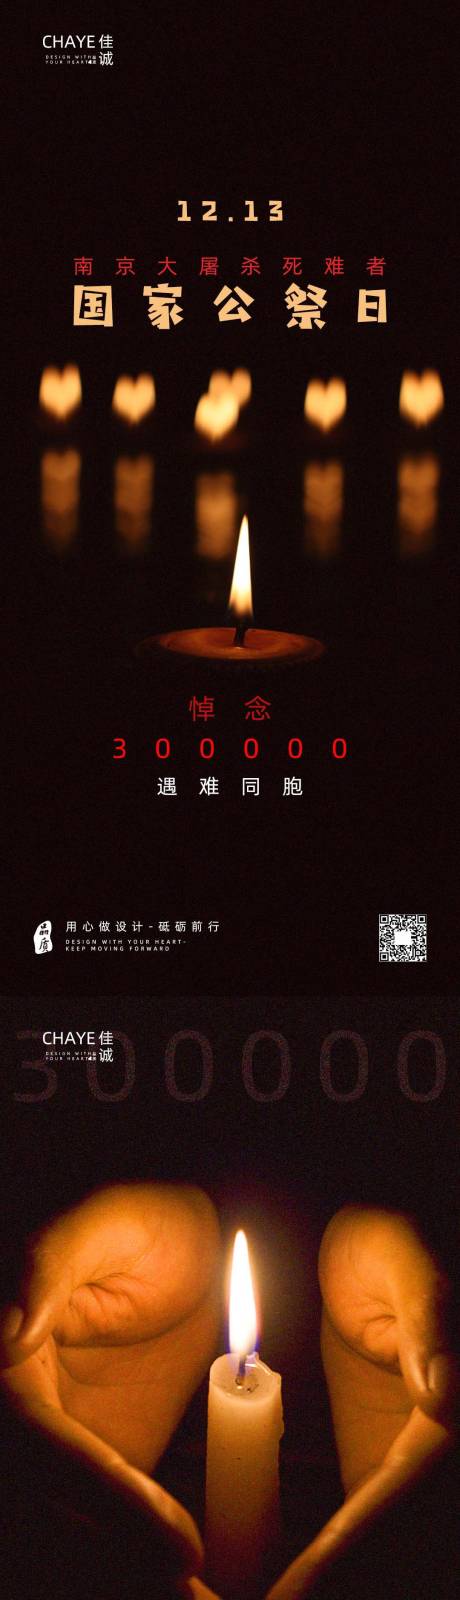 12.13南京大屠杀公祭日